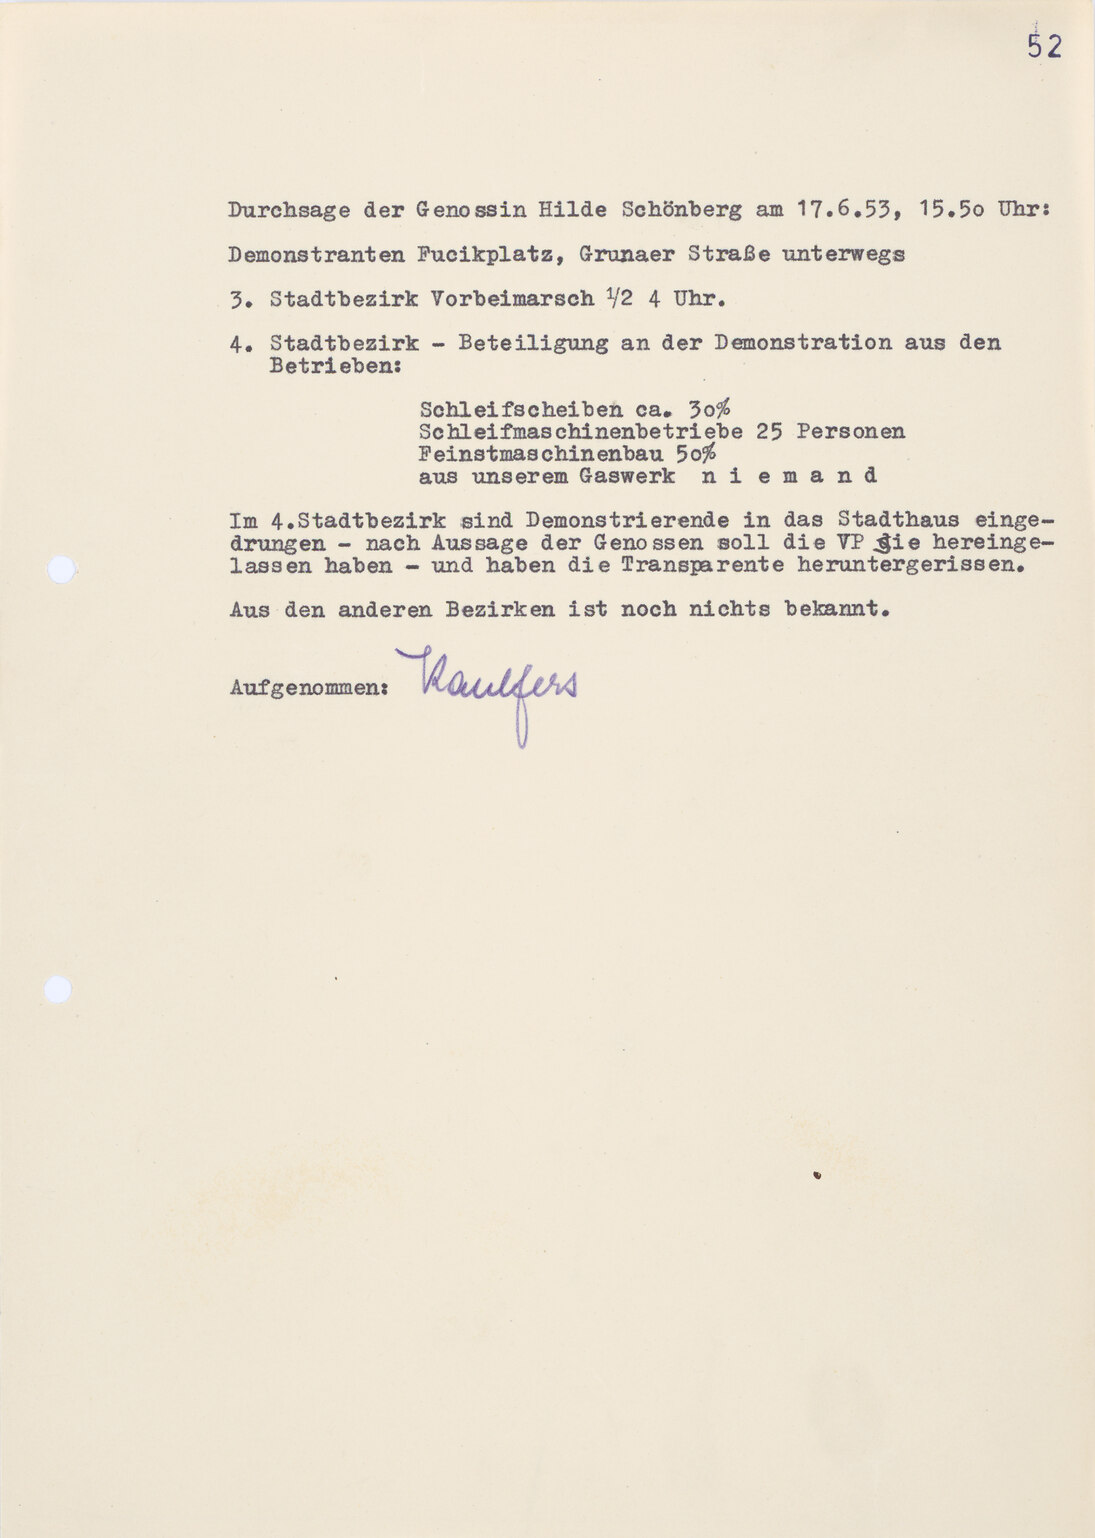 Bericht der SED-Angehörigen Hilde Schönberg über den Zug der Demonstranten am 17. Juni 1953